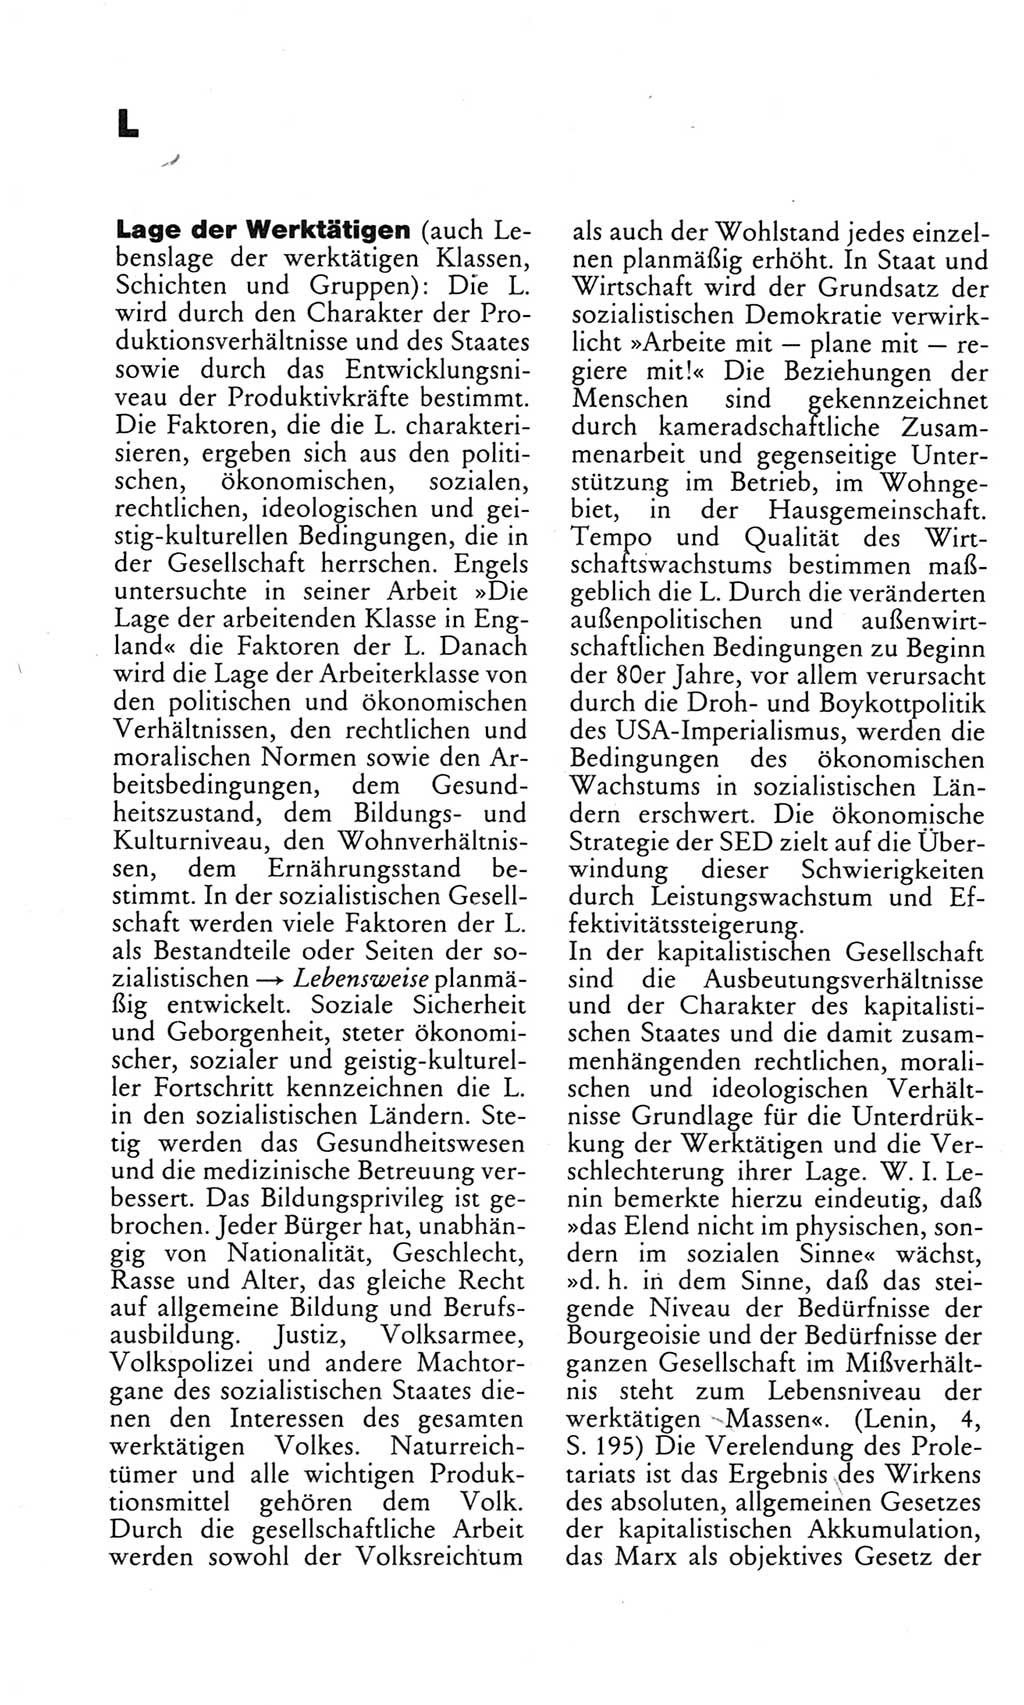 Kleines politisches Wörterbuch [Deutsche Demokratische Republik (DDR)] 1983, Seite 550 (Kl. pol. Wb. DDR 1983, S. 550)